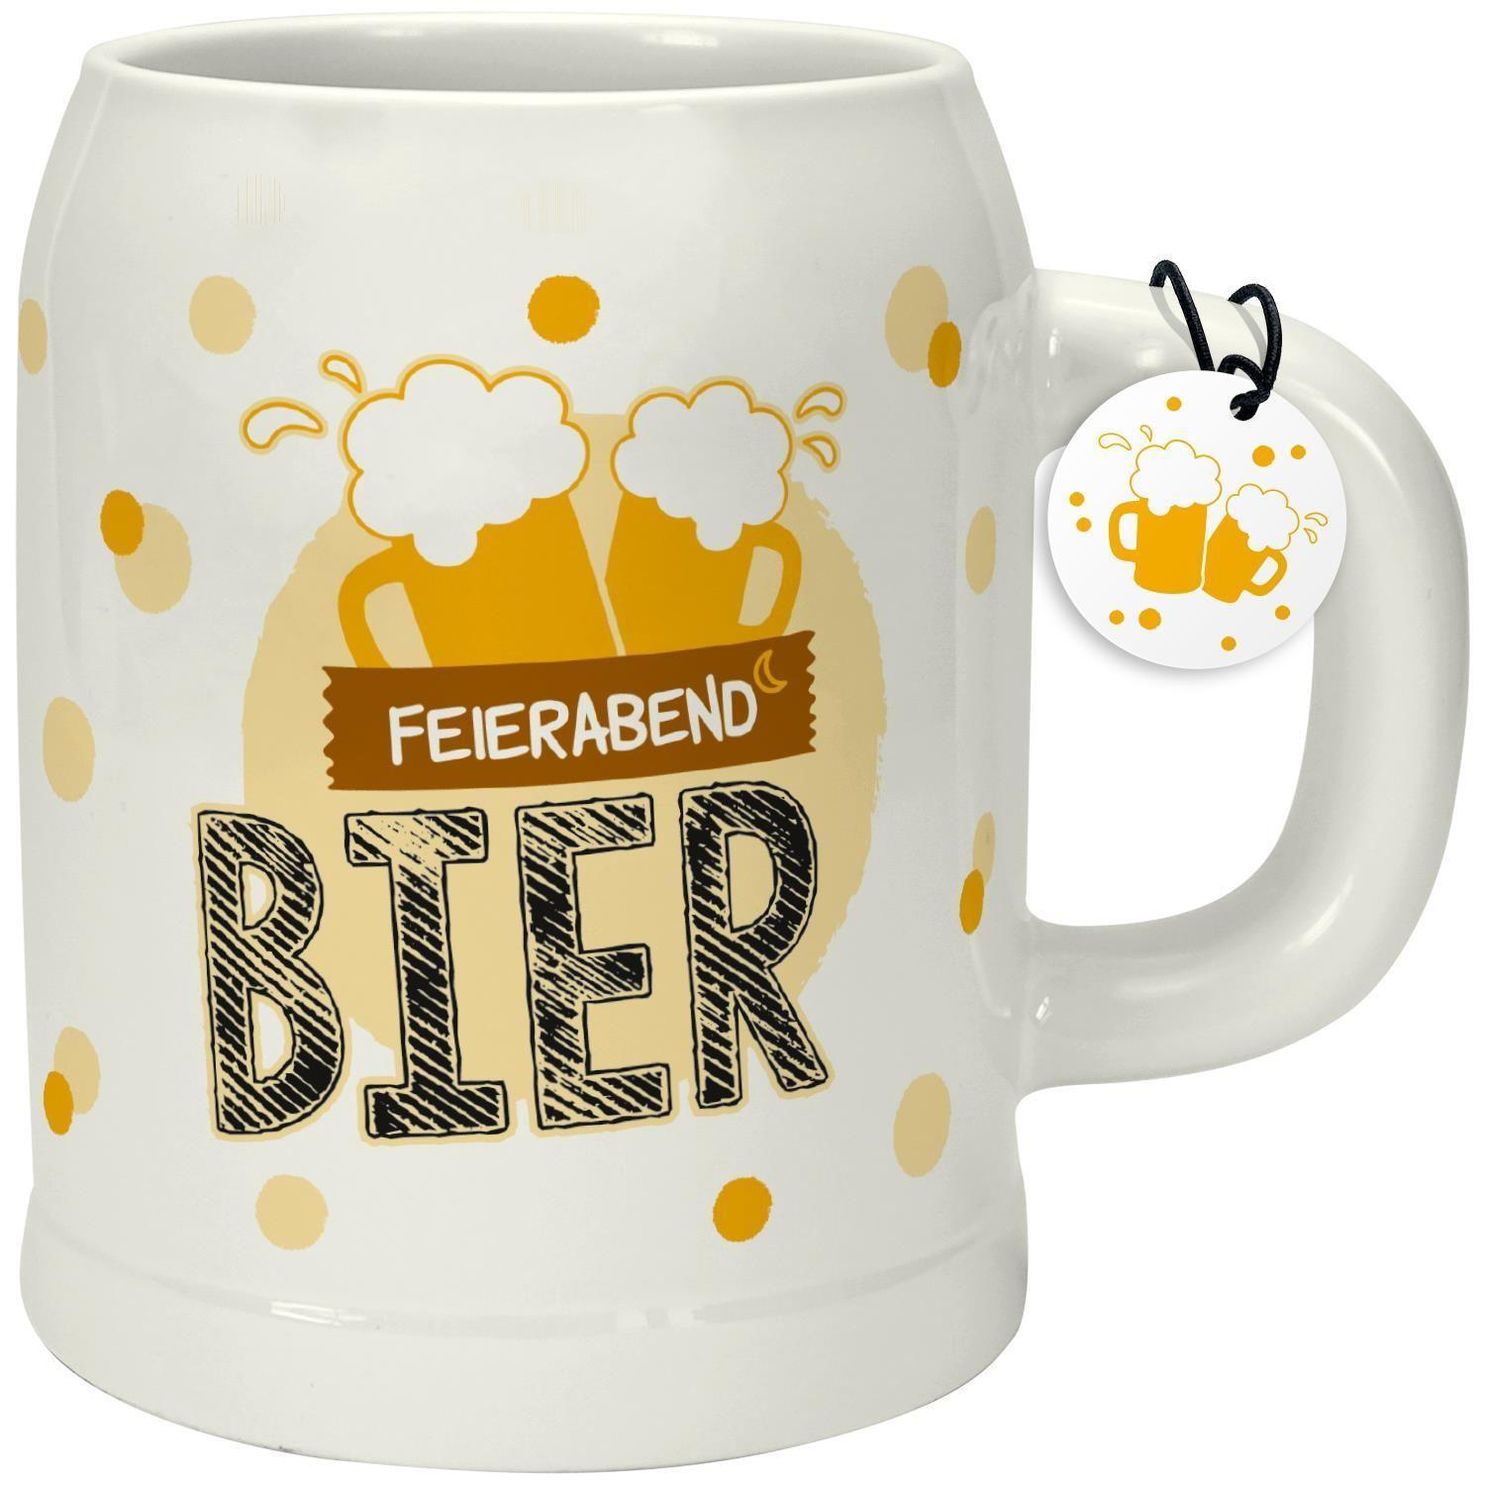 Bierkrug Feierabend Bier jetzt bei Weltbild.ch bestellen